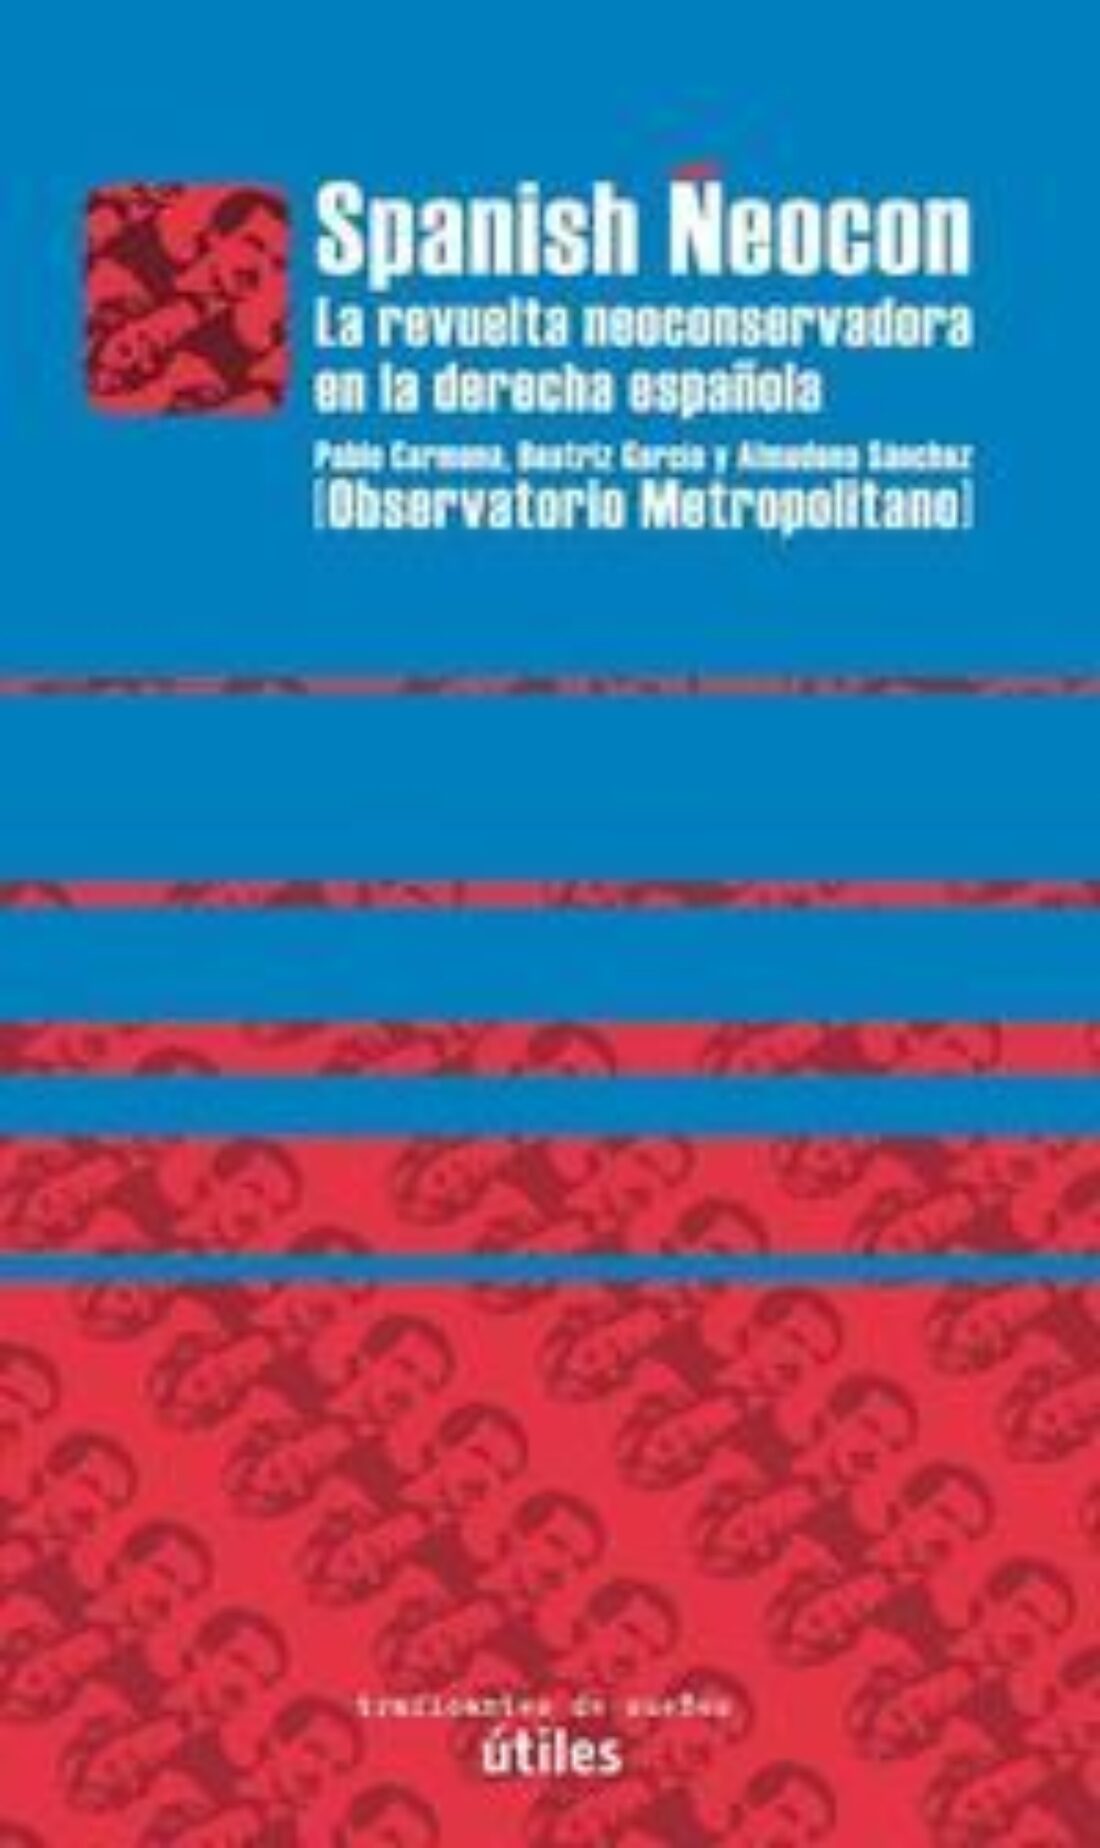 Presentación del libro «Spanish neocon. La revuelta neoconservadora en la derecha española»